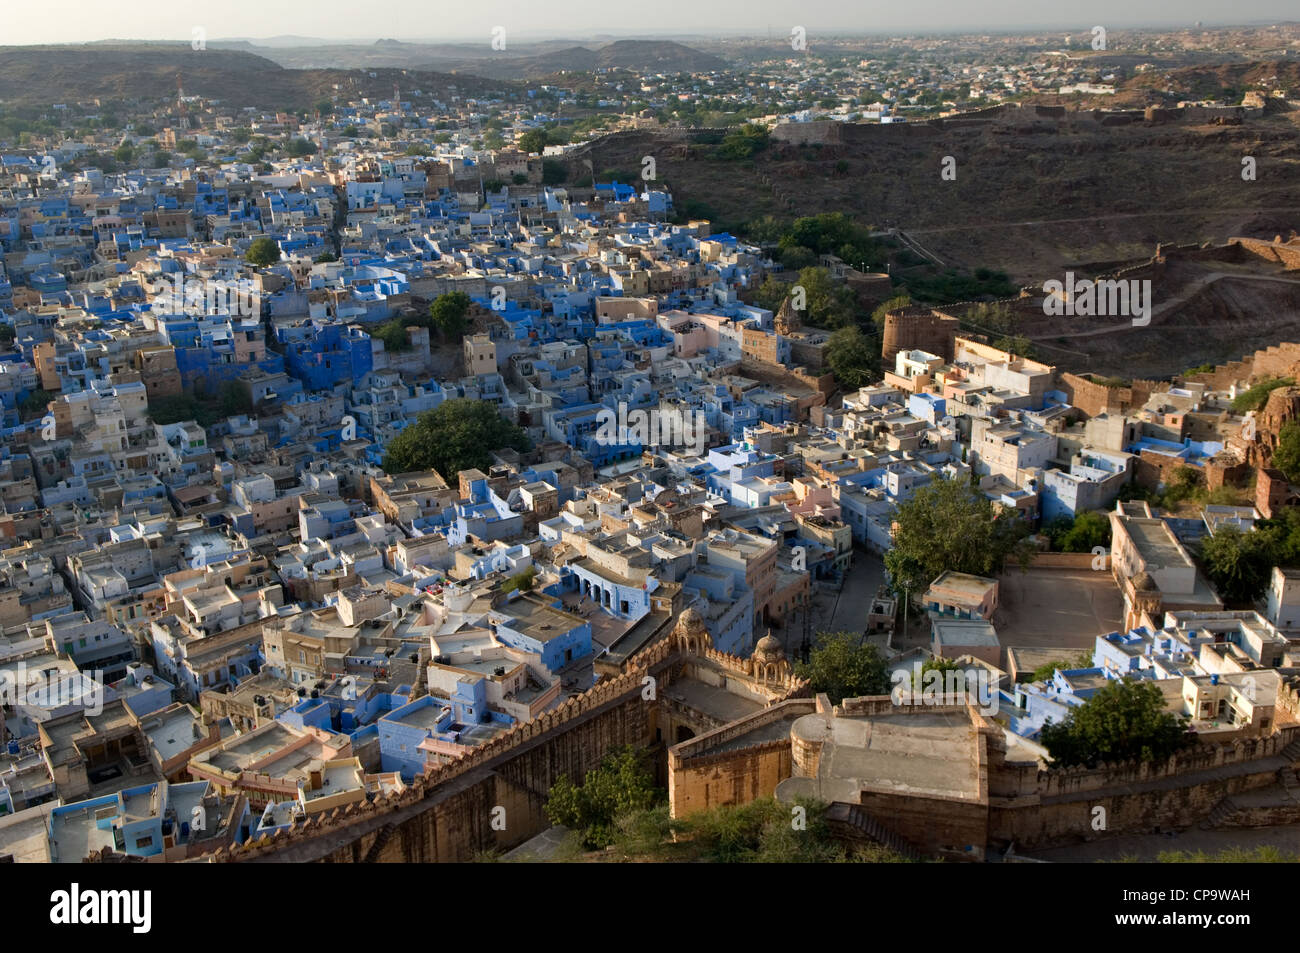 Le pareti delle abitazioni all'interno della vecchia città di Jodhpur sono dipinte di blu per tenere gli stretti vicoli fresco e privo di zanzare, Jodhpur, Rajasthan, India Foto Stock